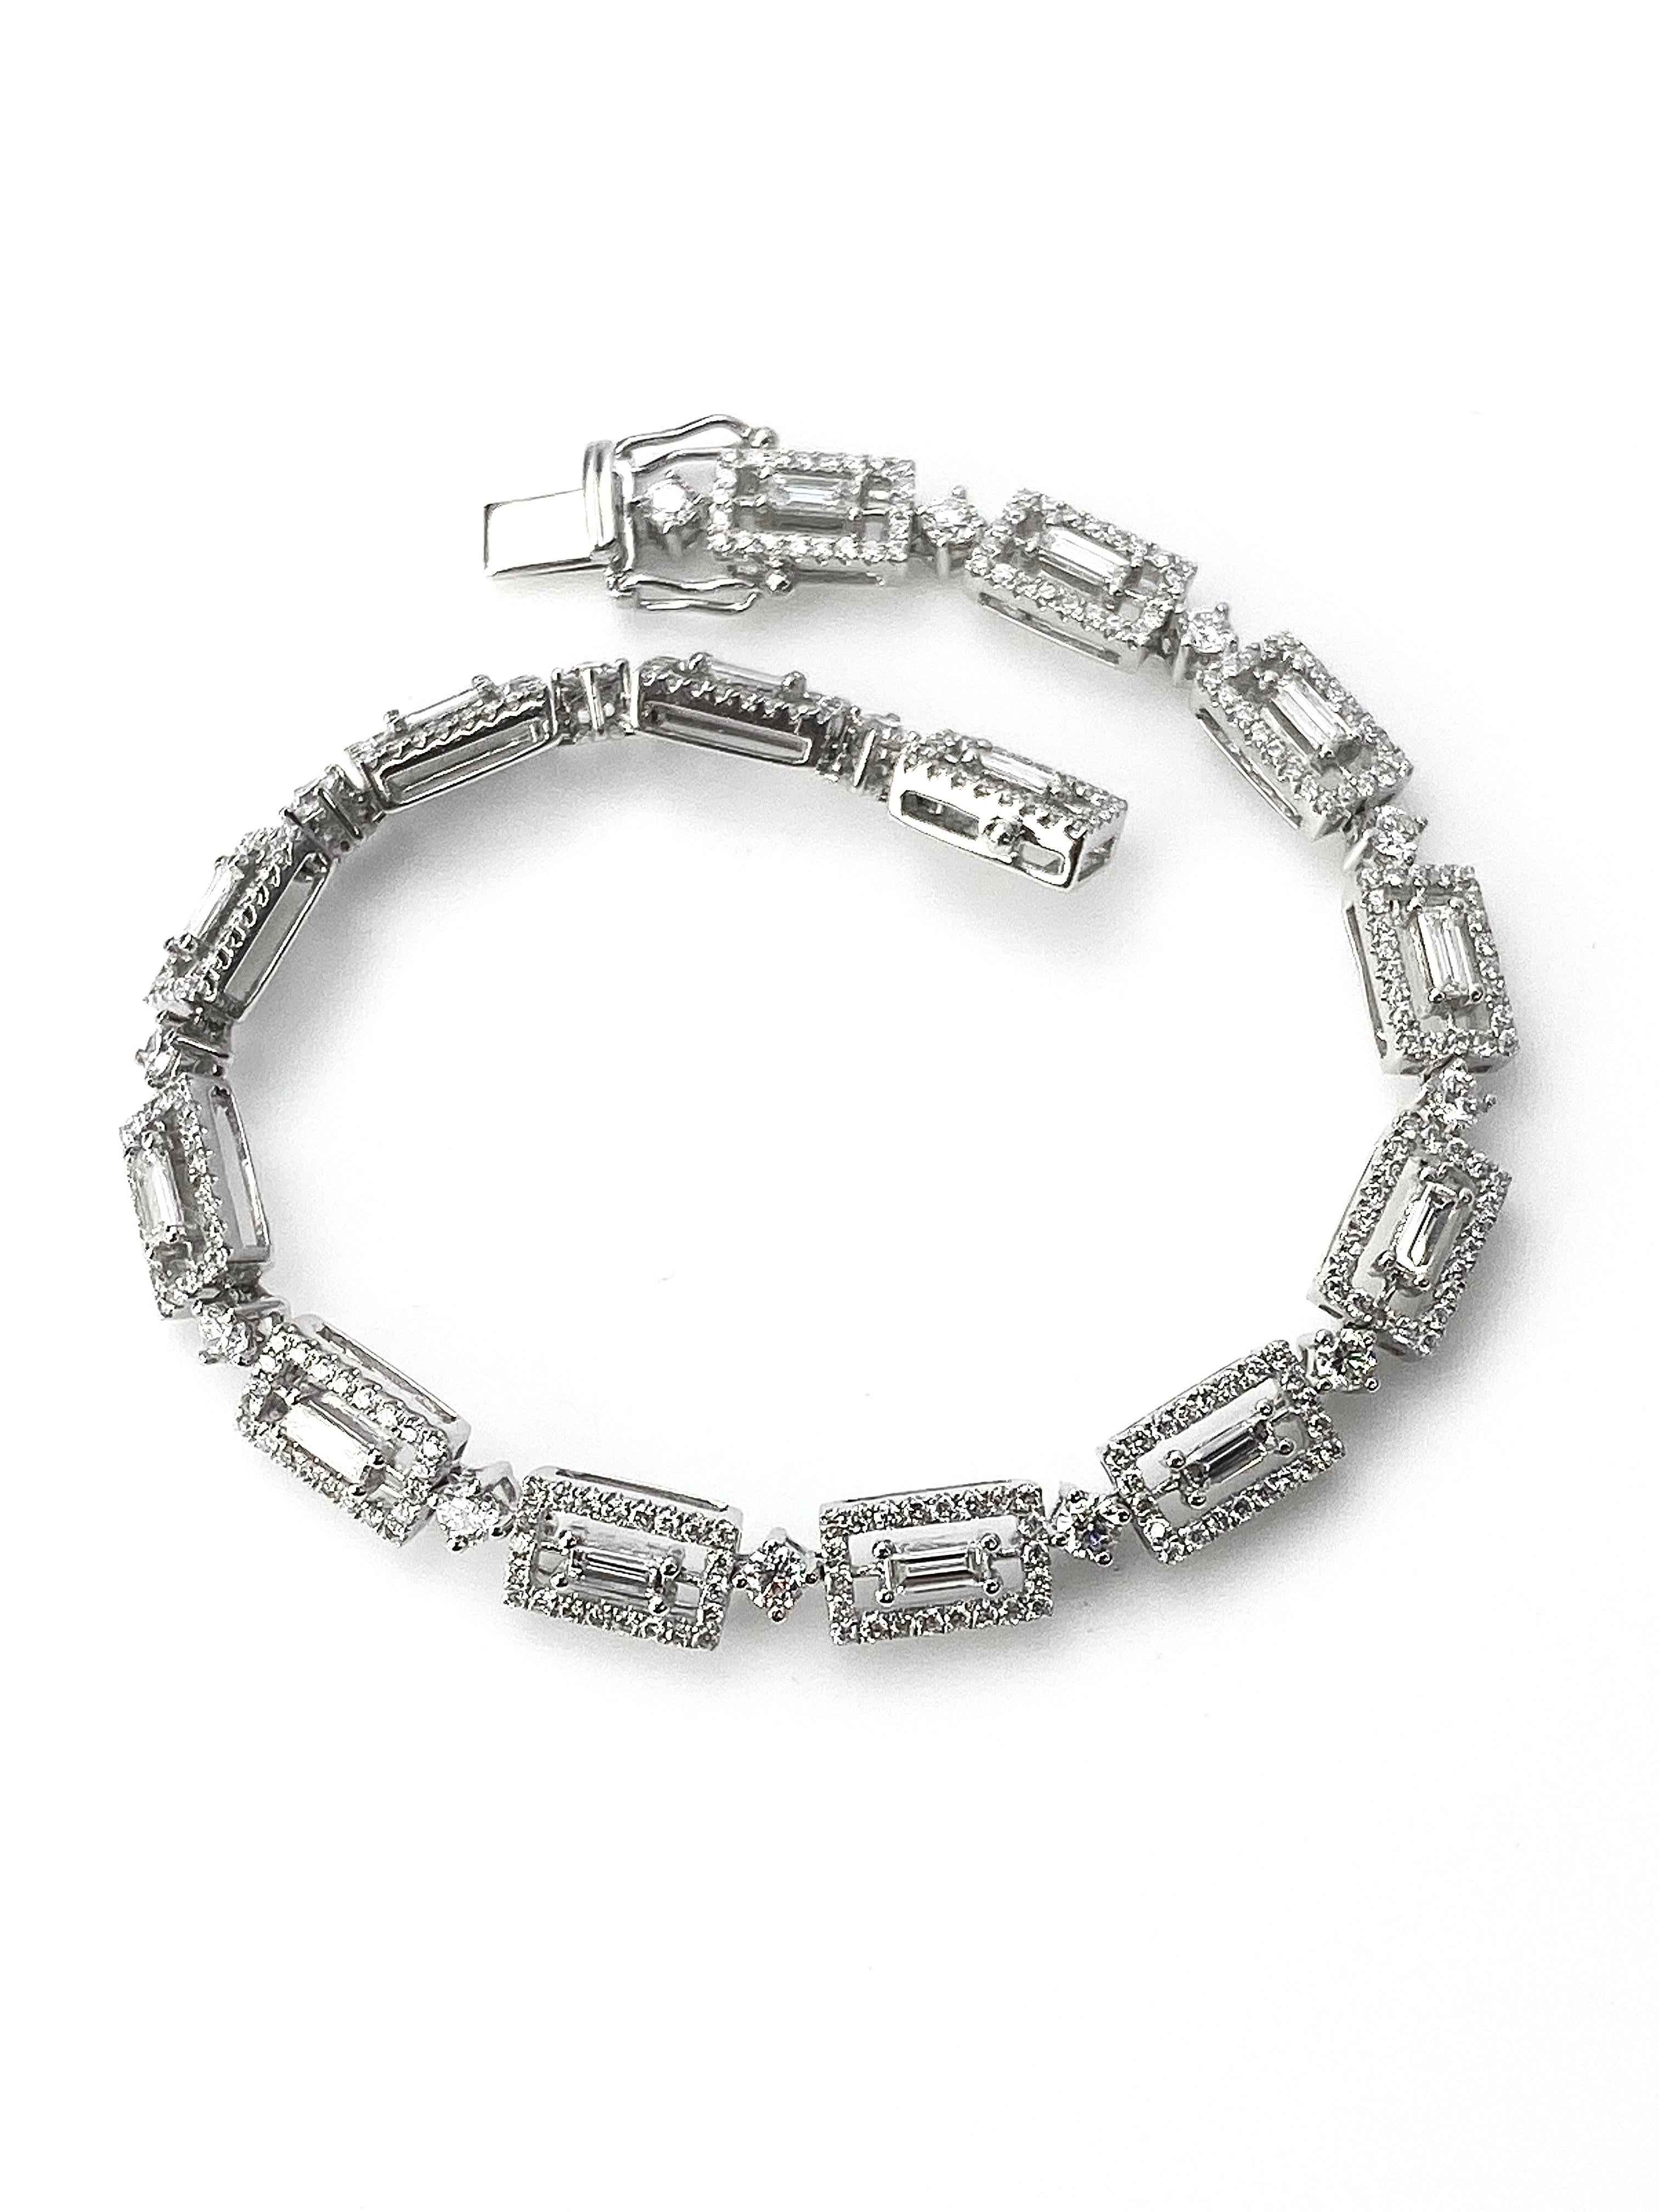 Baguette Cut Art Deco Style Baguette Diamond White Gold Bracelet with Round Diamond Details For Sale